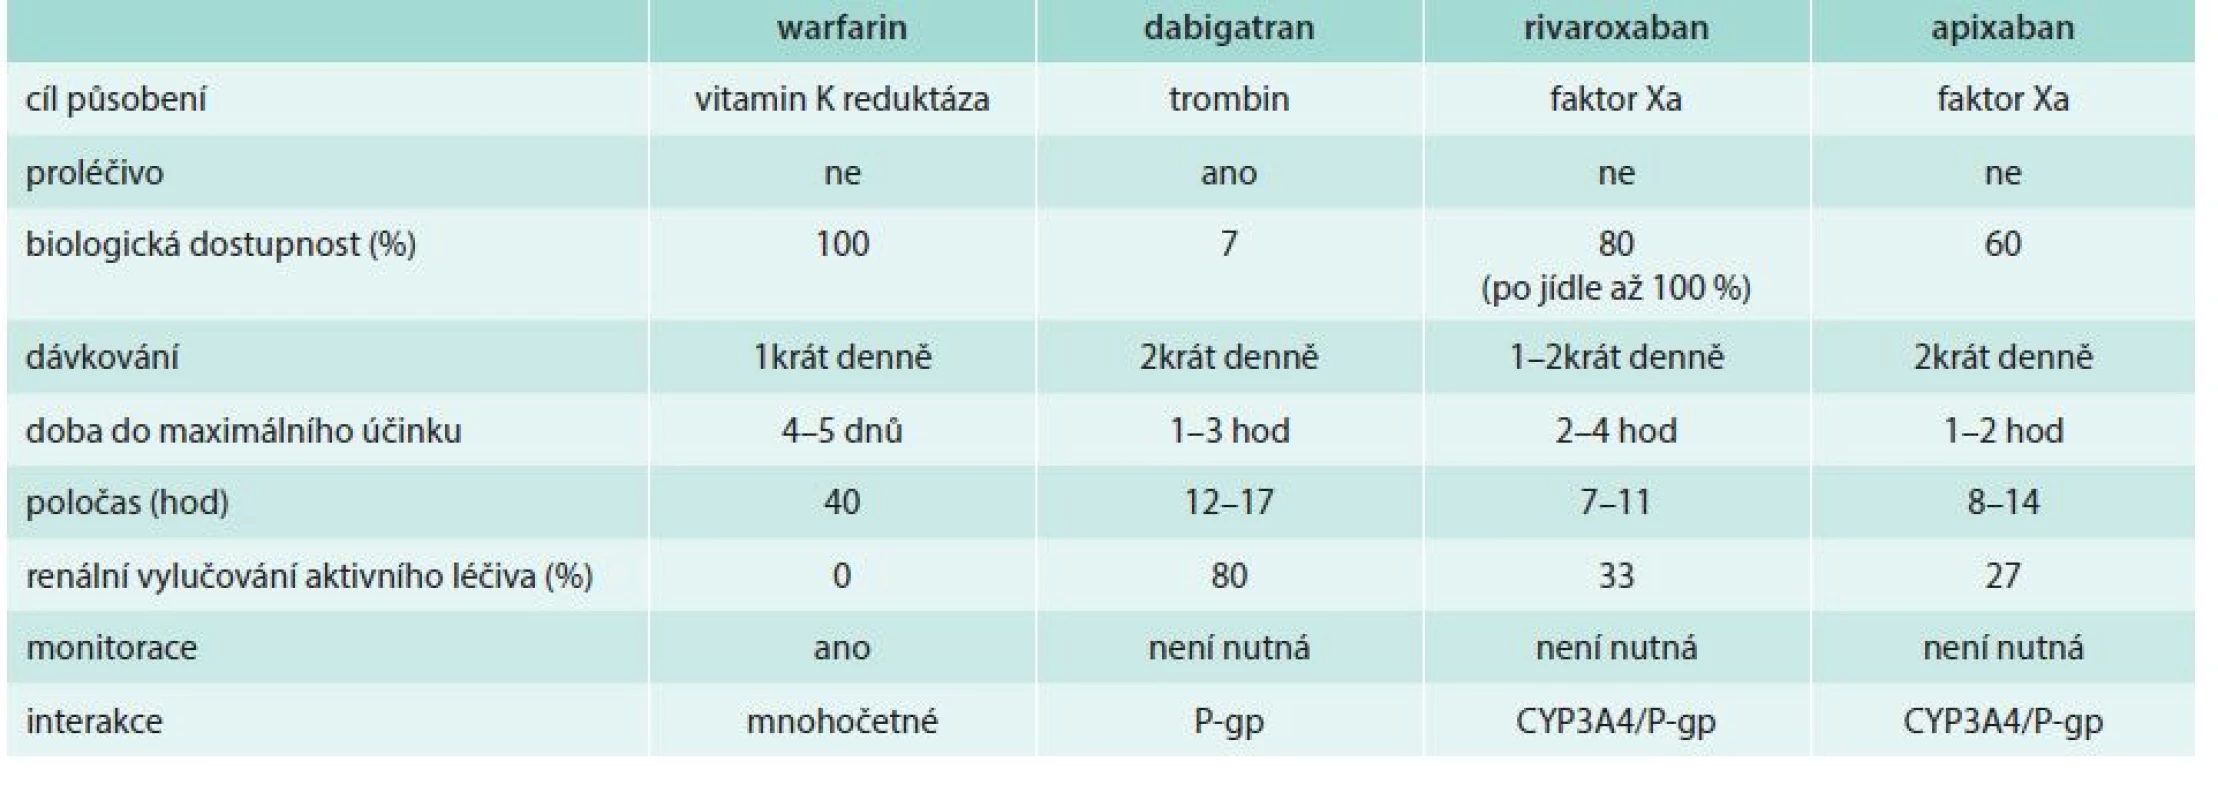 Porovnání farmakologických vlastností warfarinu a jednotlivých NOAC